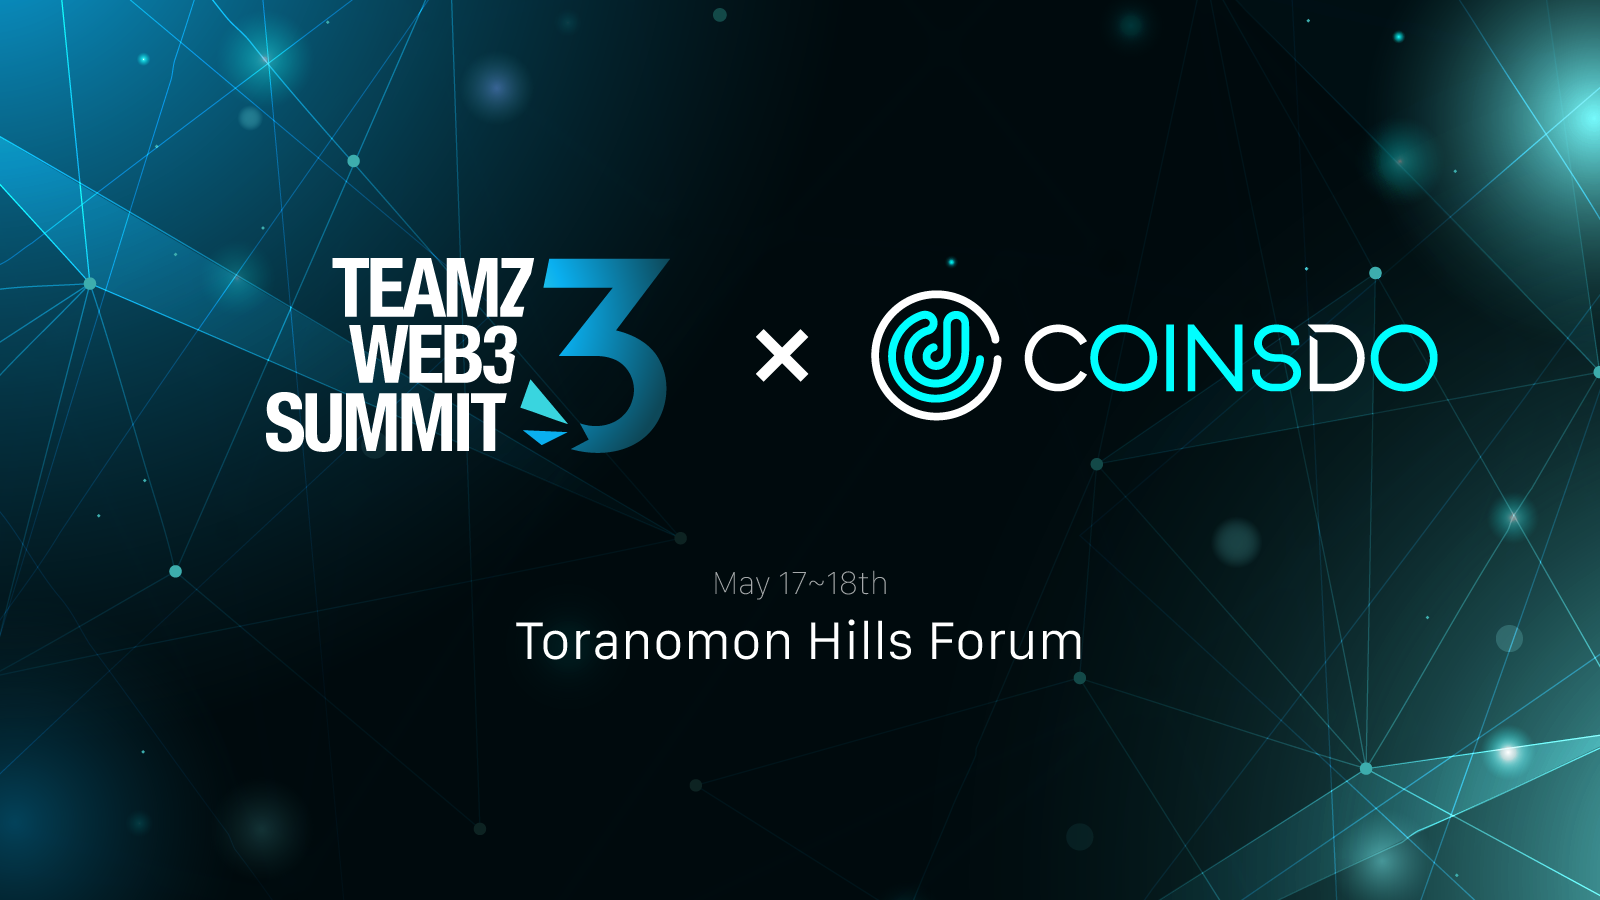 coinsdo_teamz_web3_summit